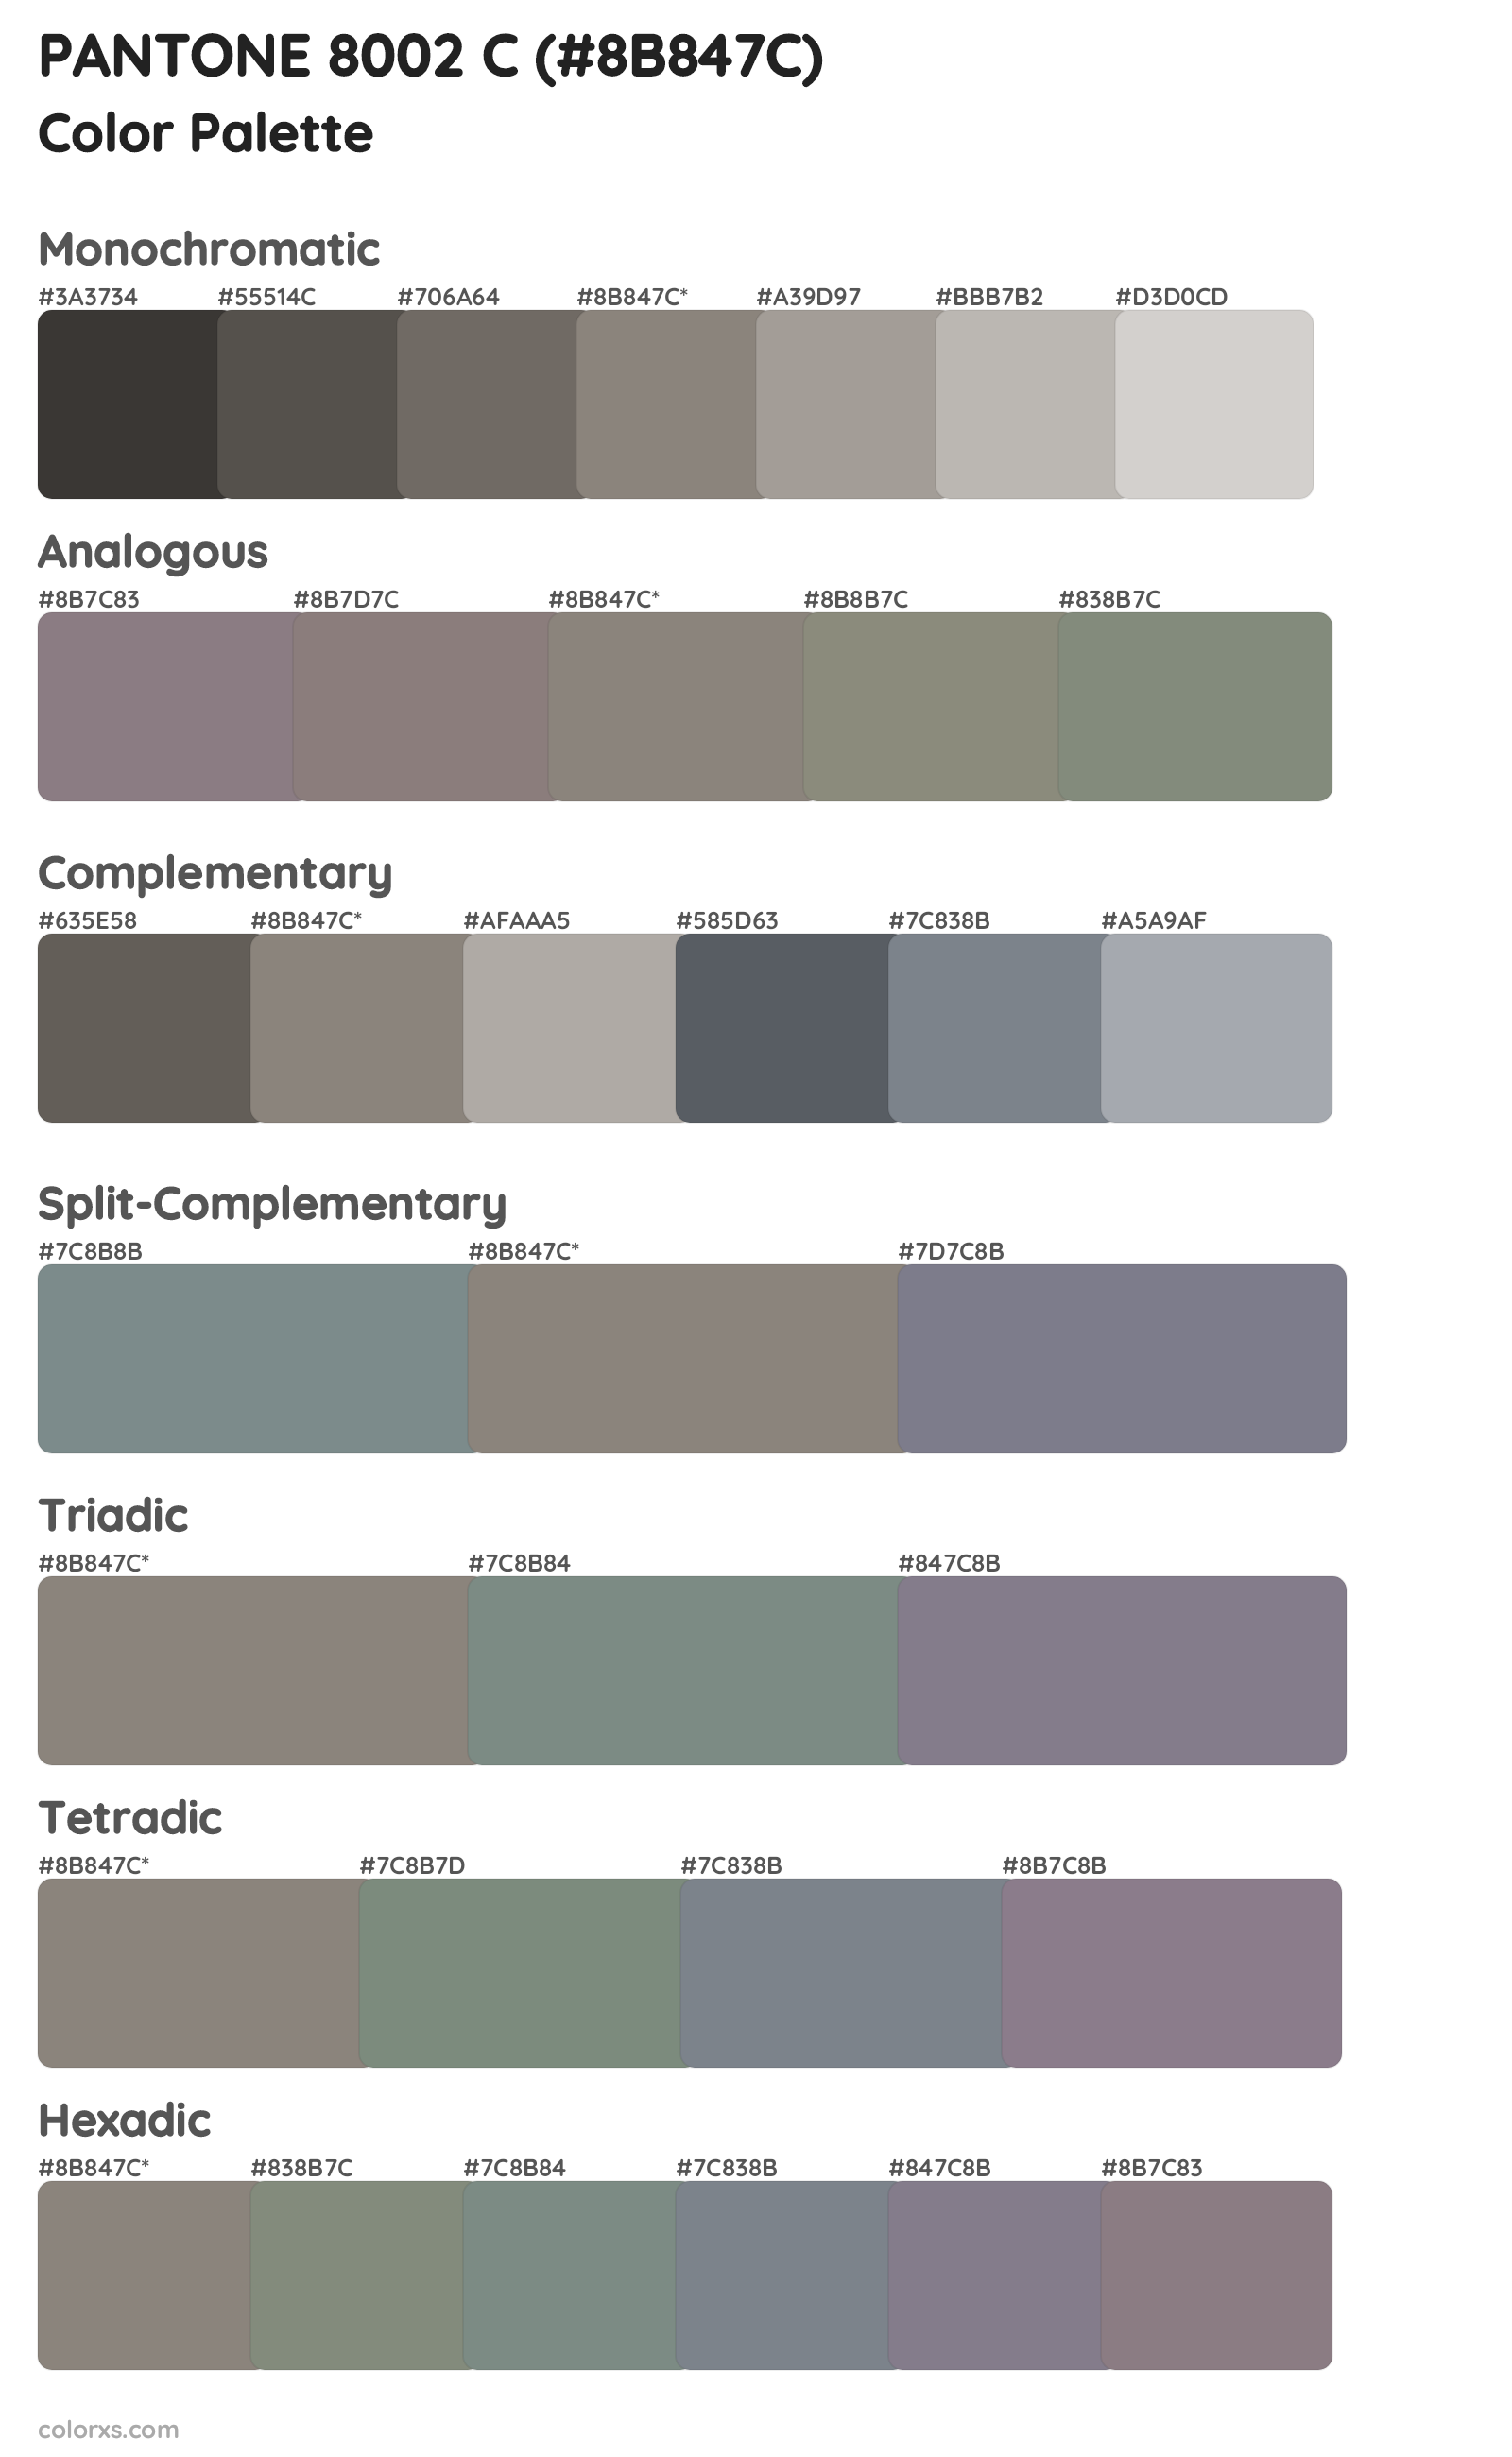 PANTONE 8002 C Color Scheme Palettes